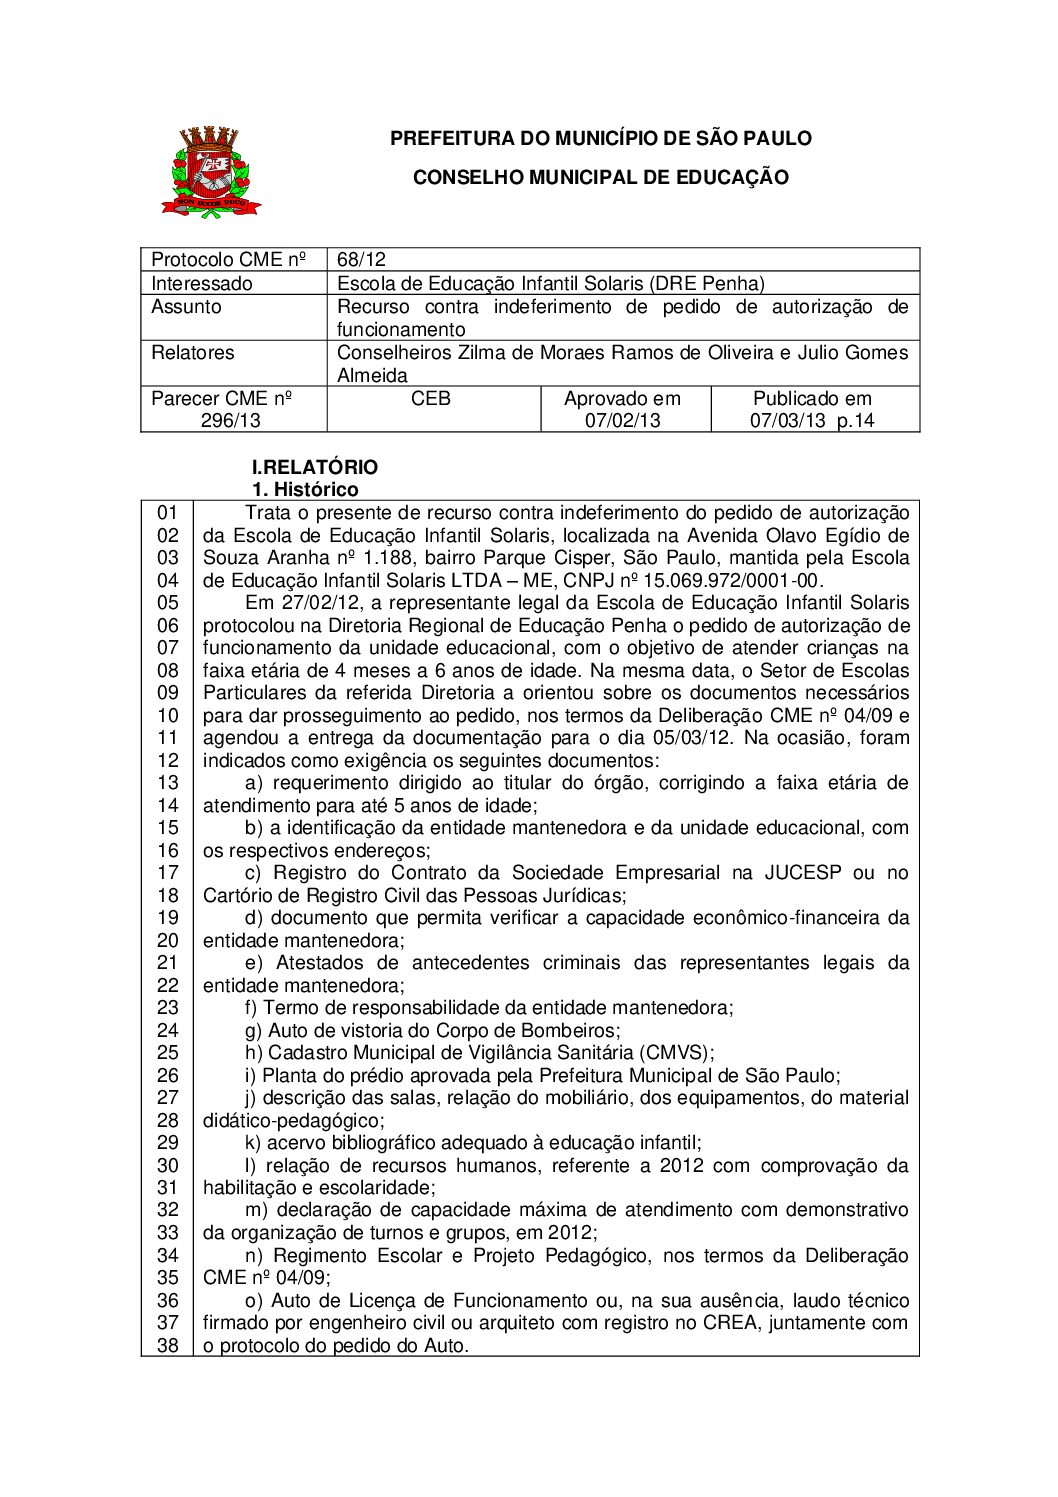 Parecer CME nº 296/2013 - Escola de Educação Infantil Solaris (DRE Penha) - Recurso contra indeferimento de pedido de autorização de funcionamento